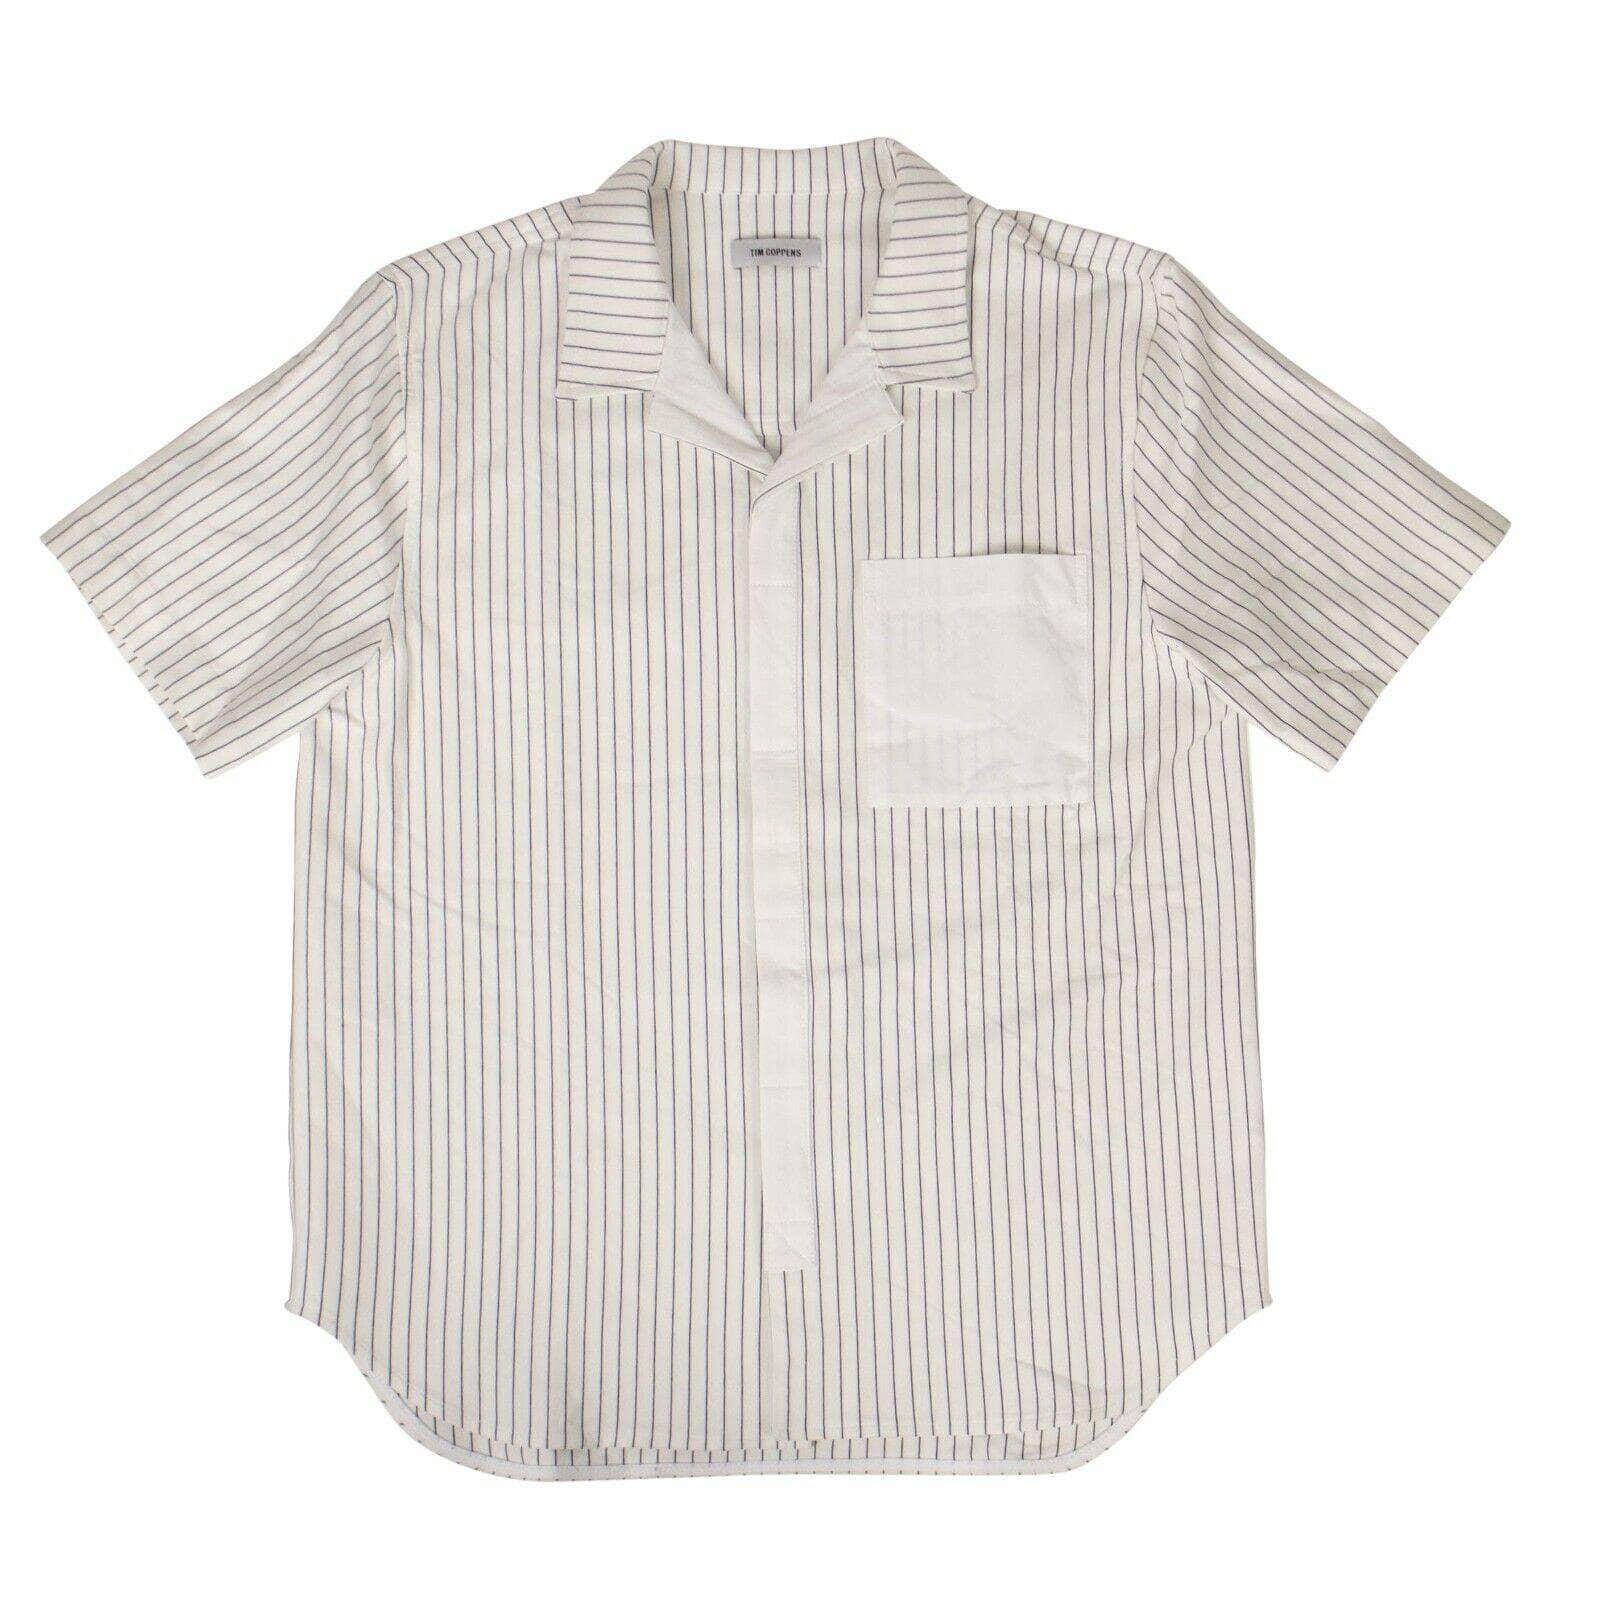 TIM COPPENS Men's Shirts Cotton Ecru Stripe Bowling Shirt - White